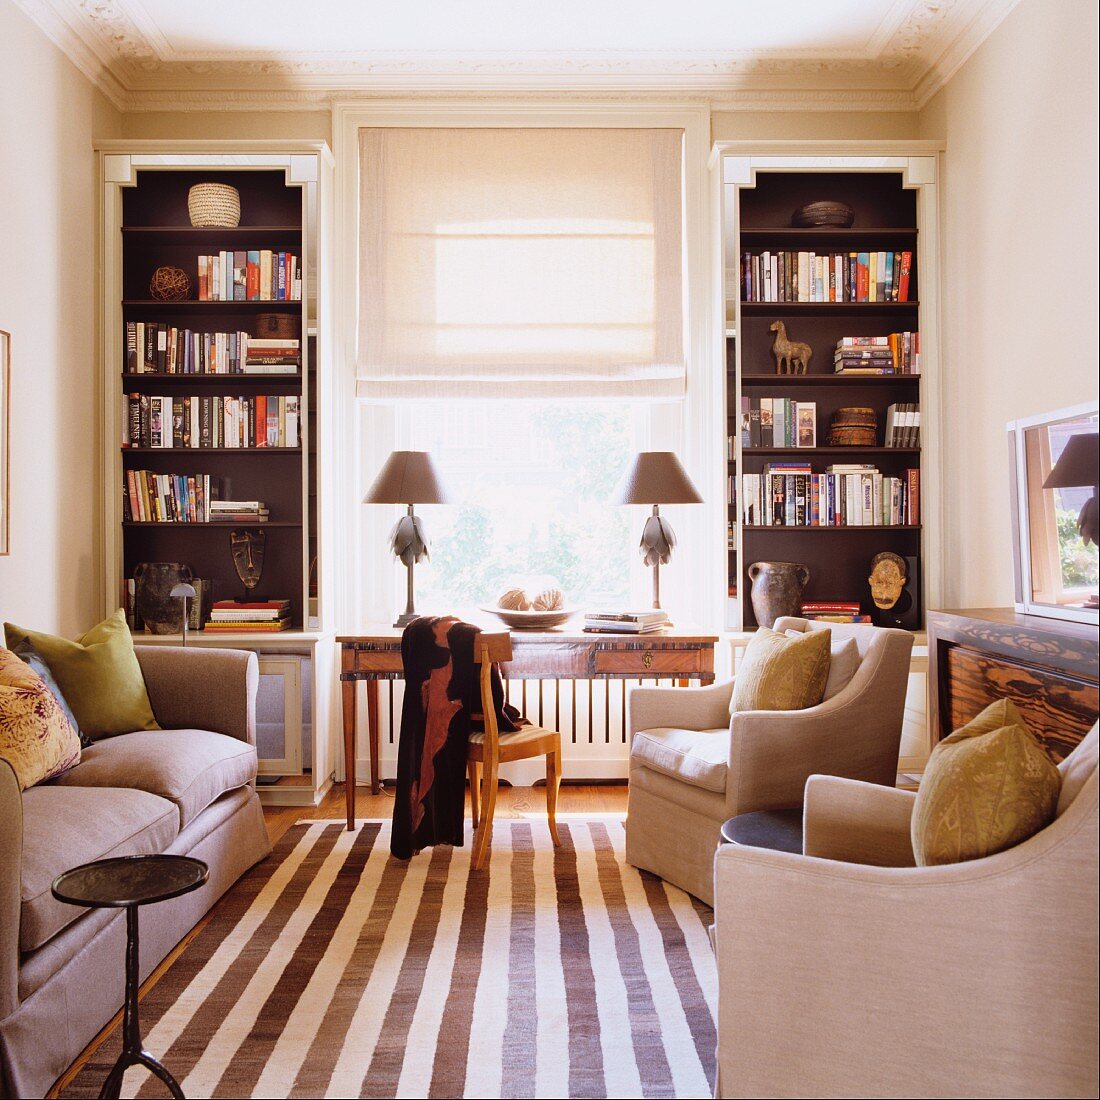 Streifenteppichläufer zwischen Sofa und eleganten Sesseln im Wohnzimmer mit Regaleinbauten im Art Deco-Stil neben dem Fenster